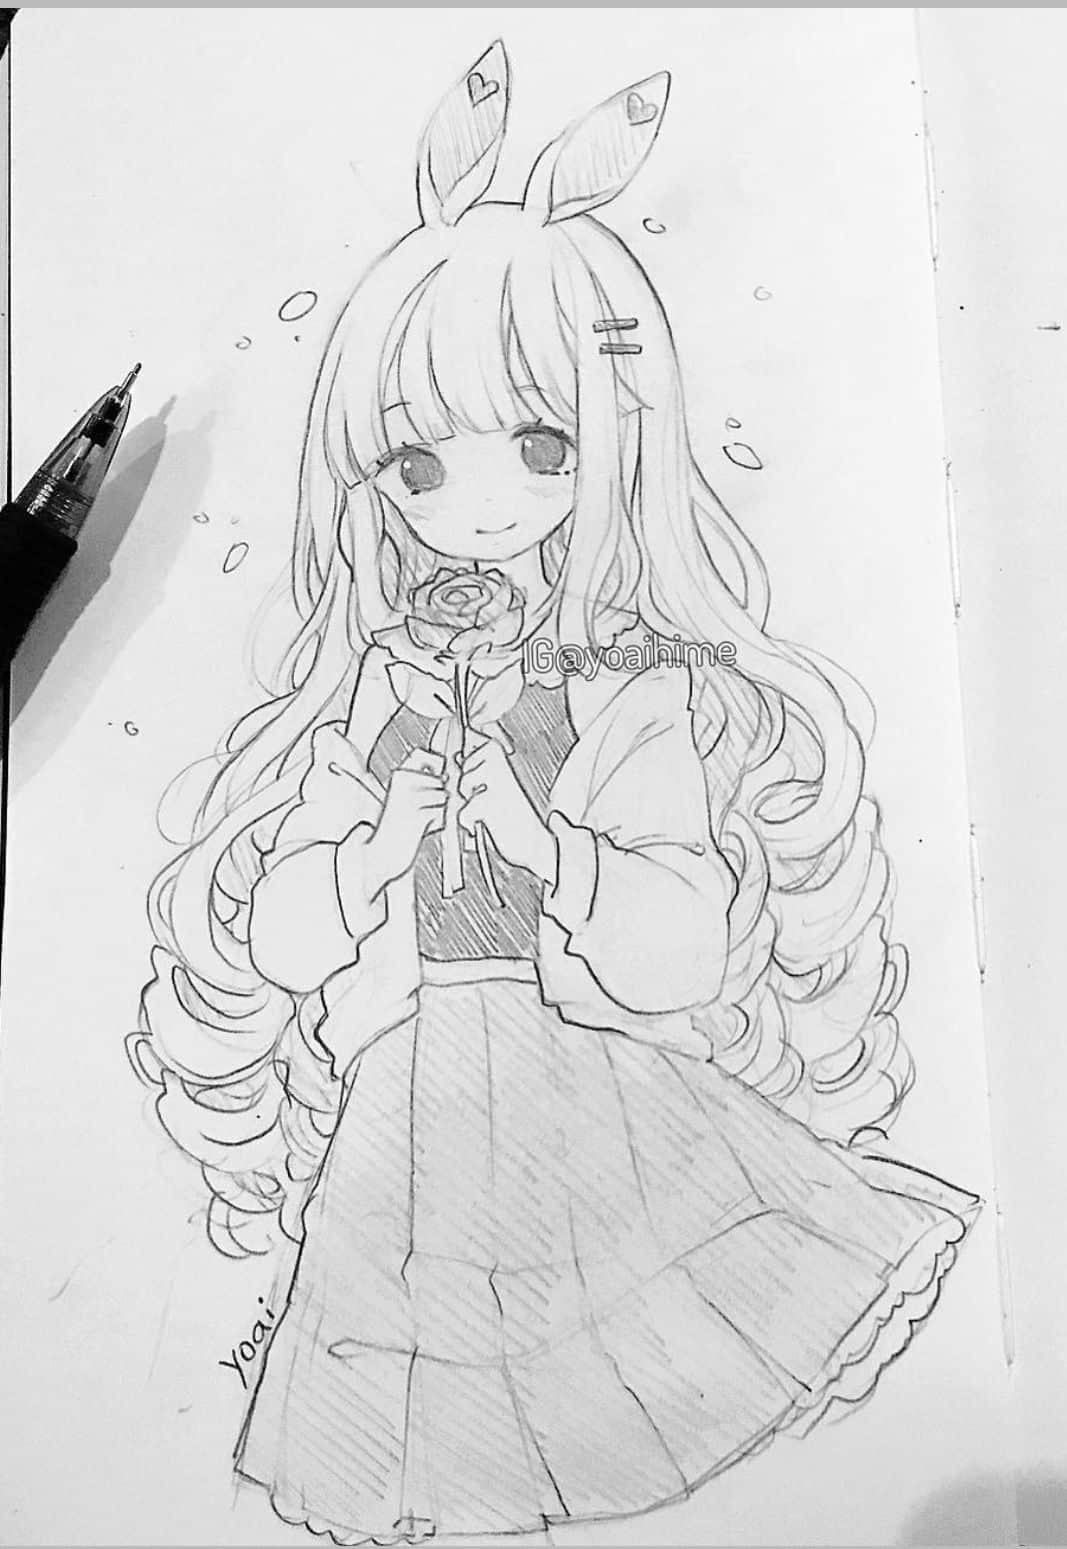 Cách vẽ cô gái anime đơn giản 93  Vẽ cô gái bằng bút chì dễ dàng  YouTube